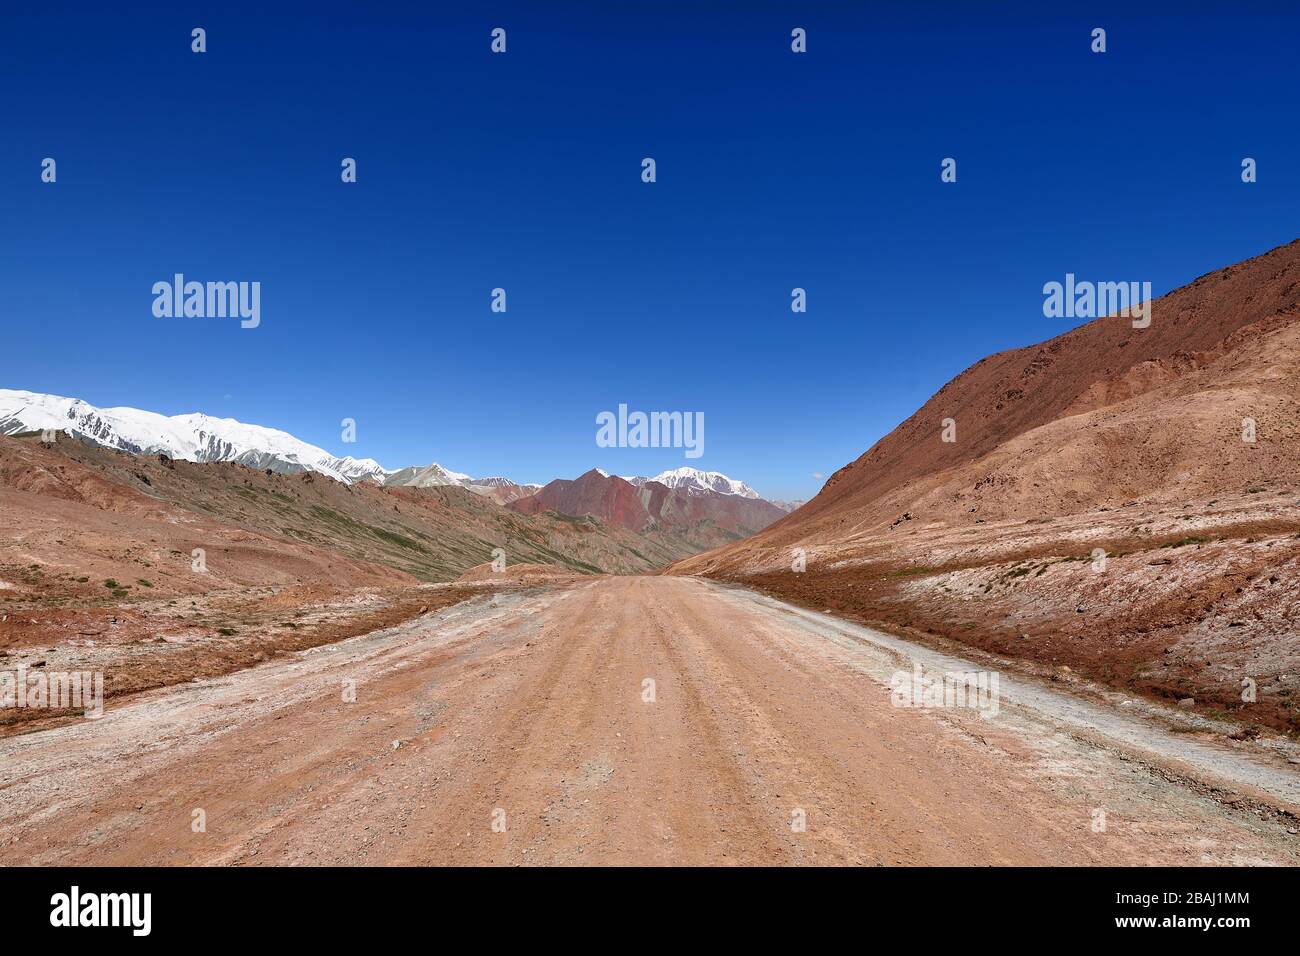 Blick vom Pamir-Highway, zweithöchste Straße der Welt, Pamir-Gebirge, Tadschikistan, Zentralasien-Seidenstraße, endlos, Landschaft, Straße, blau, r Stockfoto